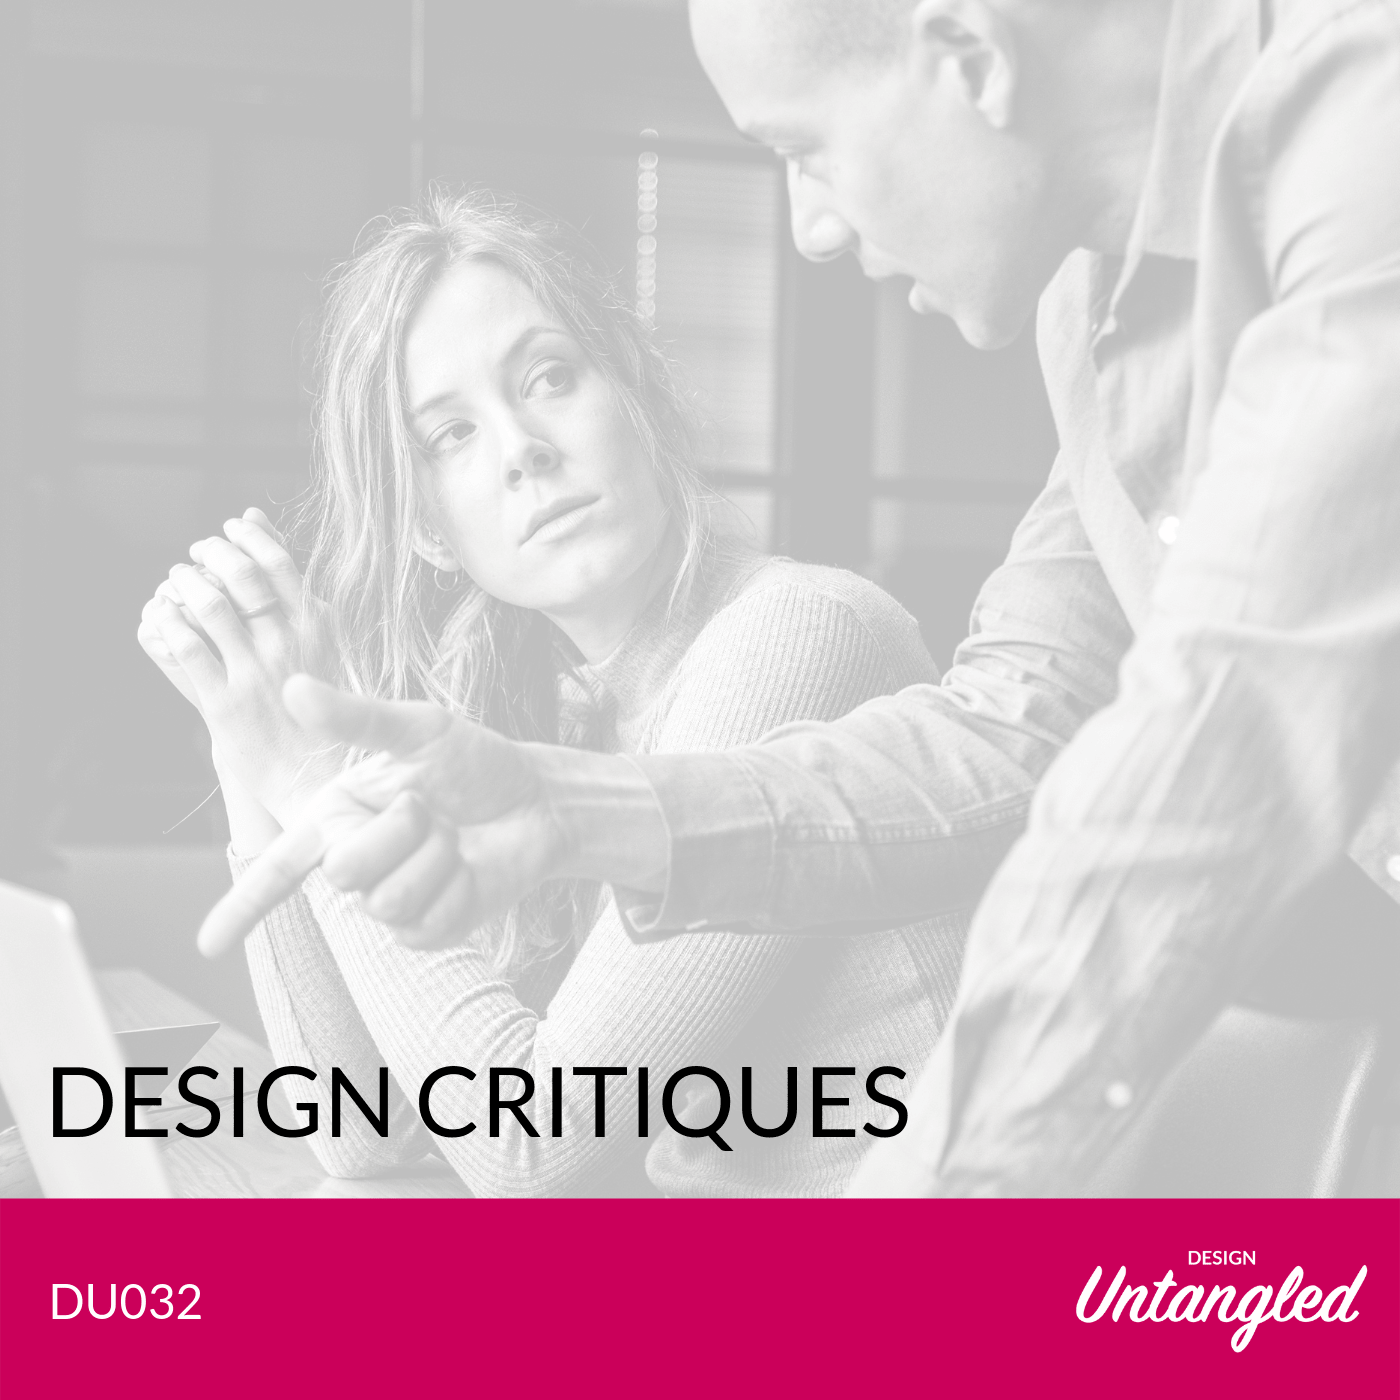 DU032 – Design Critiques